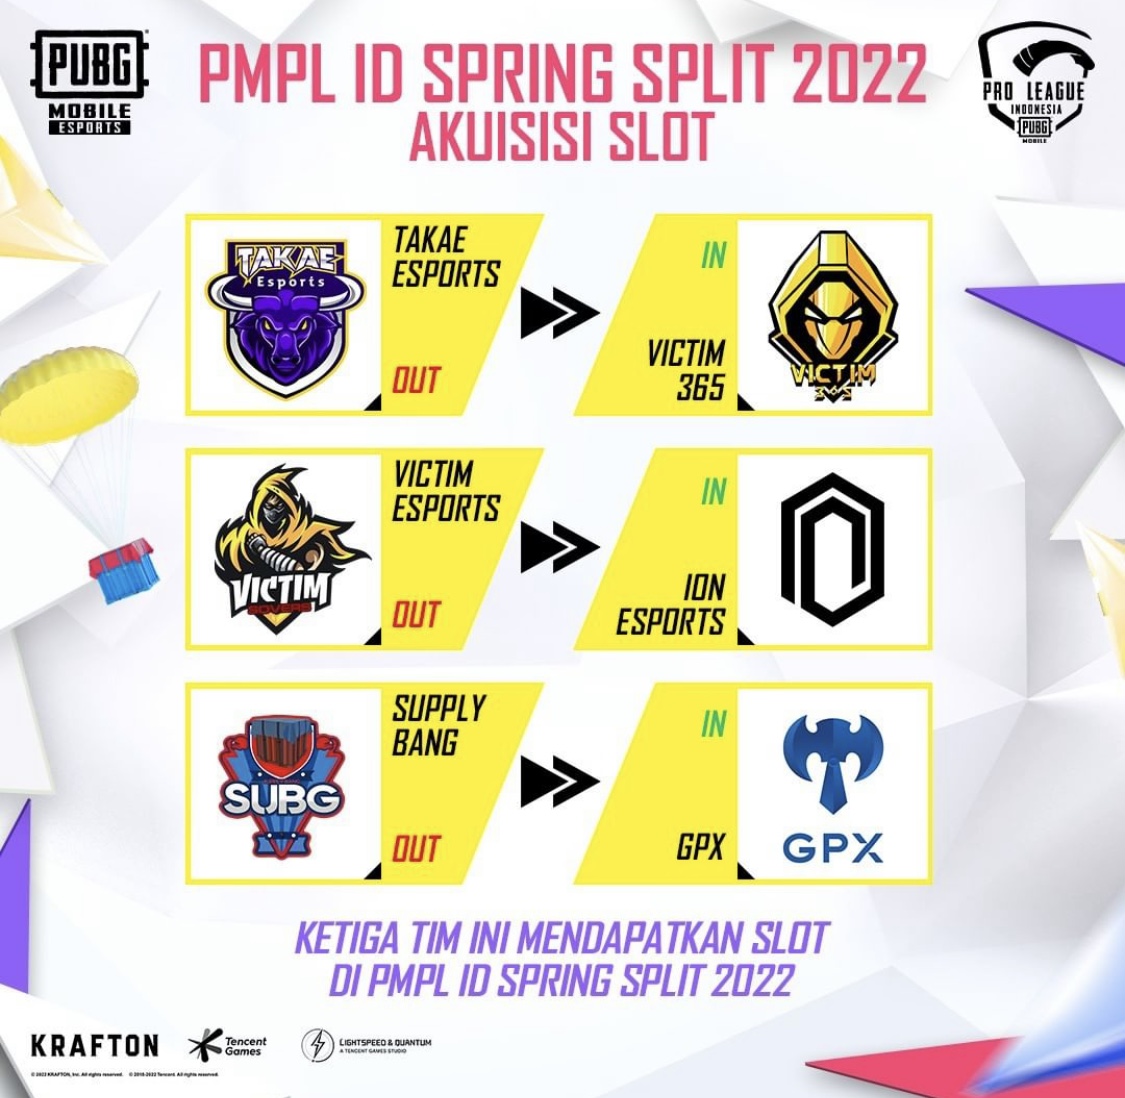 GPX dan Dua Tim Lainnya Akuisisi Slot PMPL ID Spring Split 2022